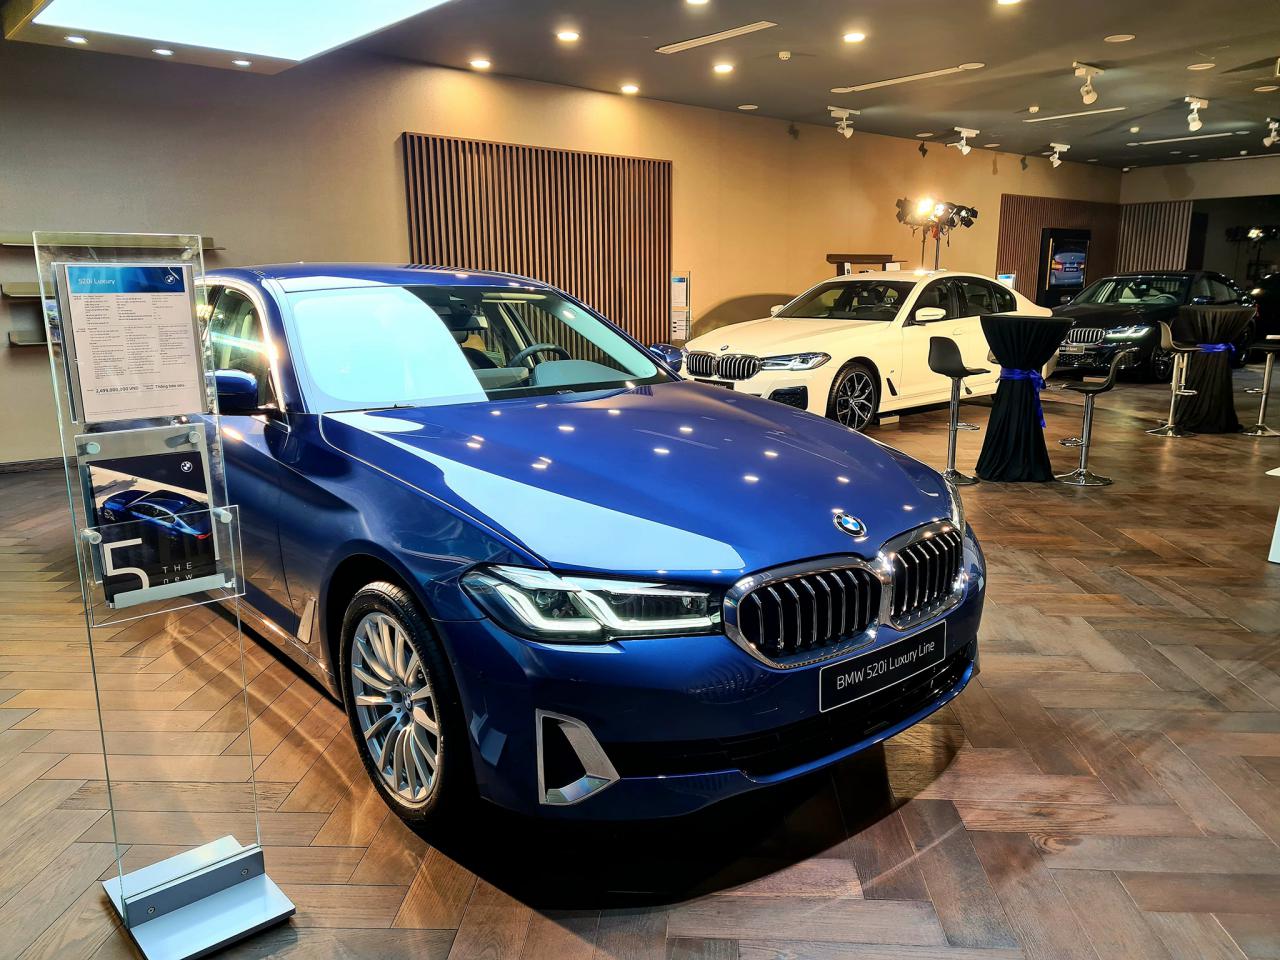 Sự kiện ra mắt xe tại BMW Long Biên.